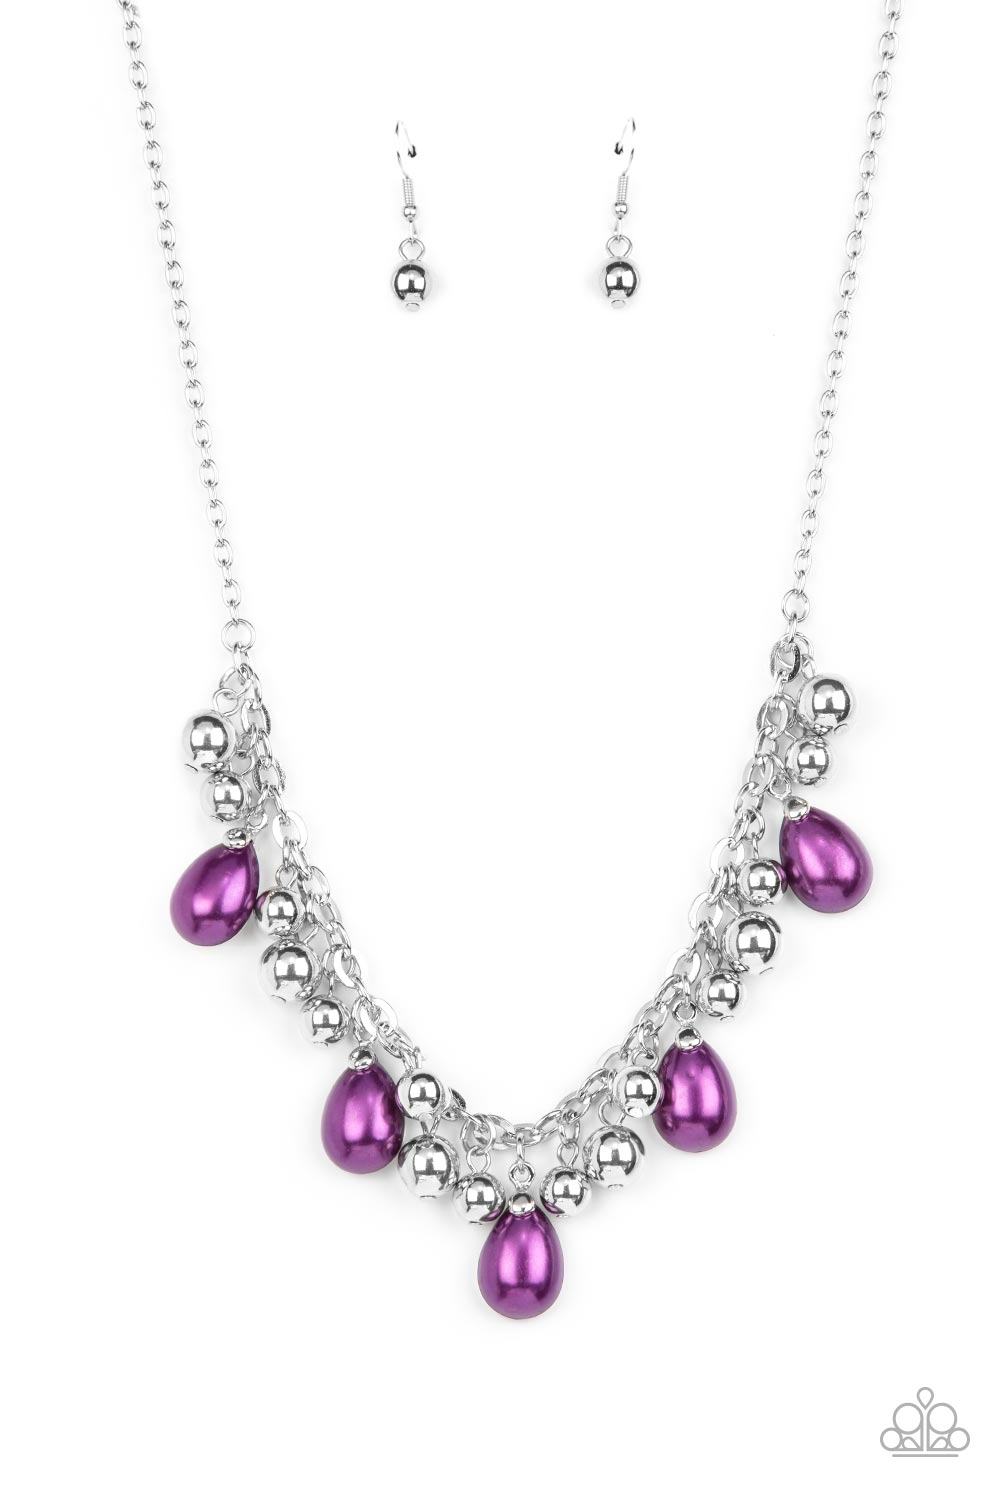 party-favor-purple-necklace